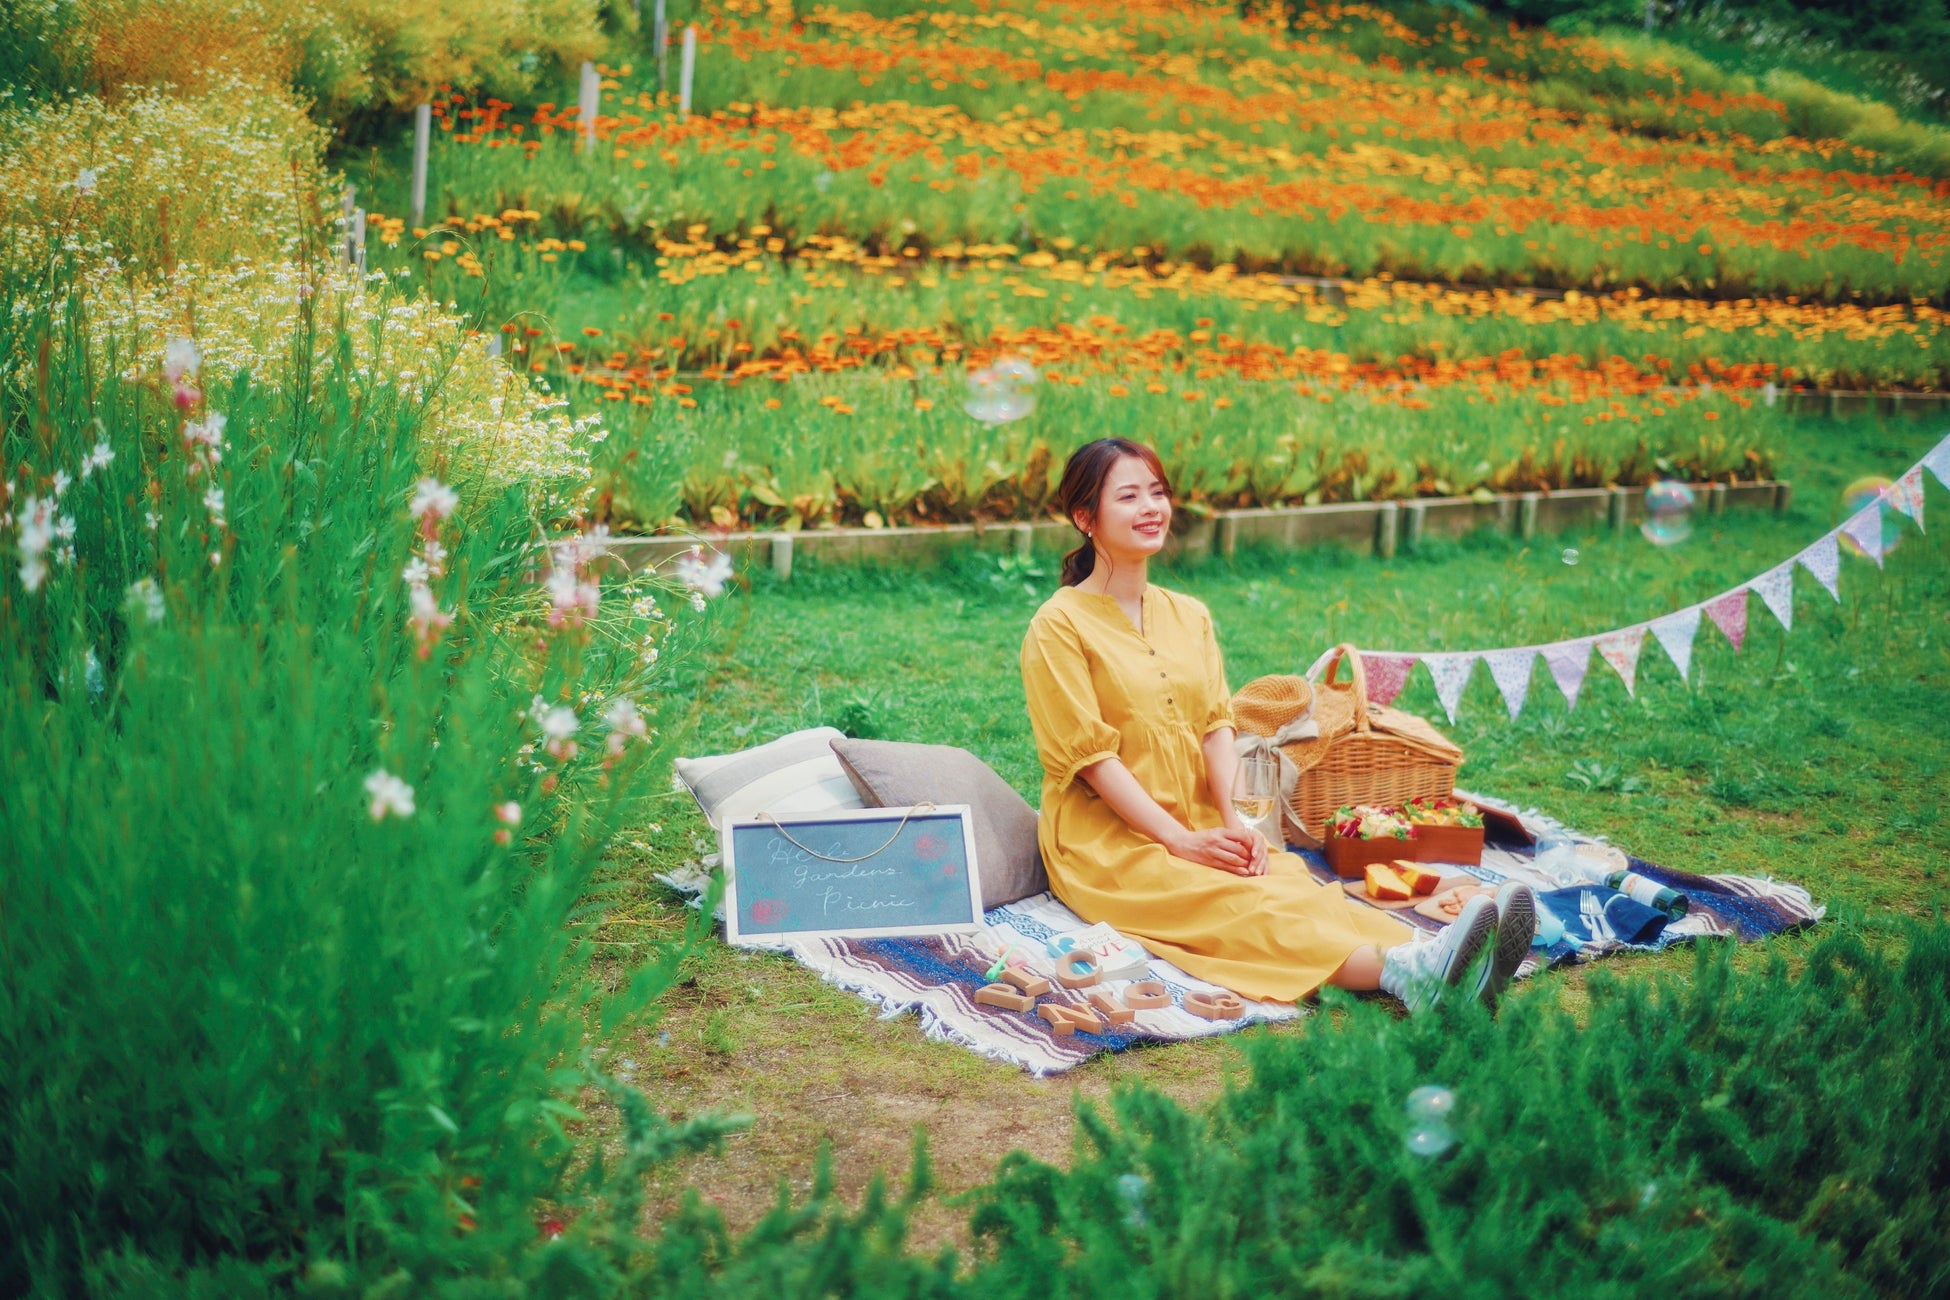 大人気の“手ぶらおしゃピク”企画「Garden Picnic2024」春シーズンのご予約を受付中。おしゃれアイテムをすべてレンタル。華やかなガーデンやロケーションが、上質で特別なピクニックを演出します